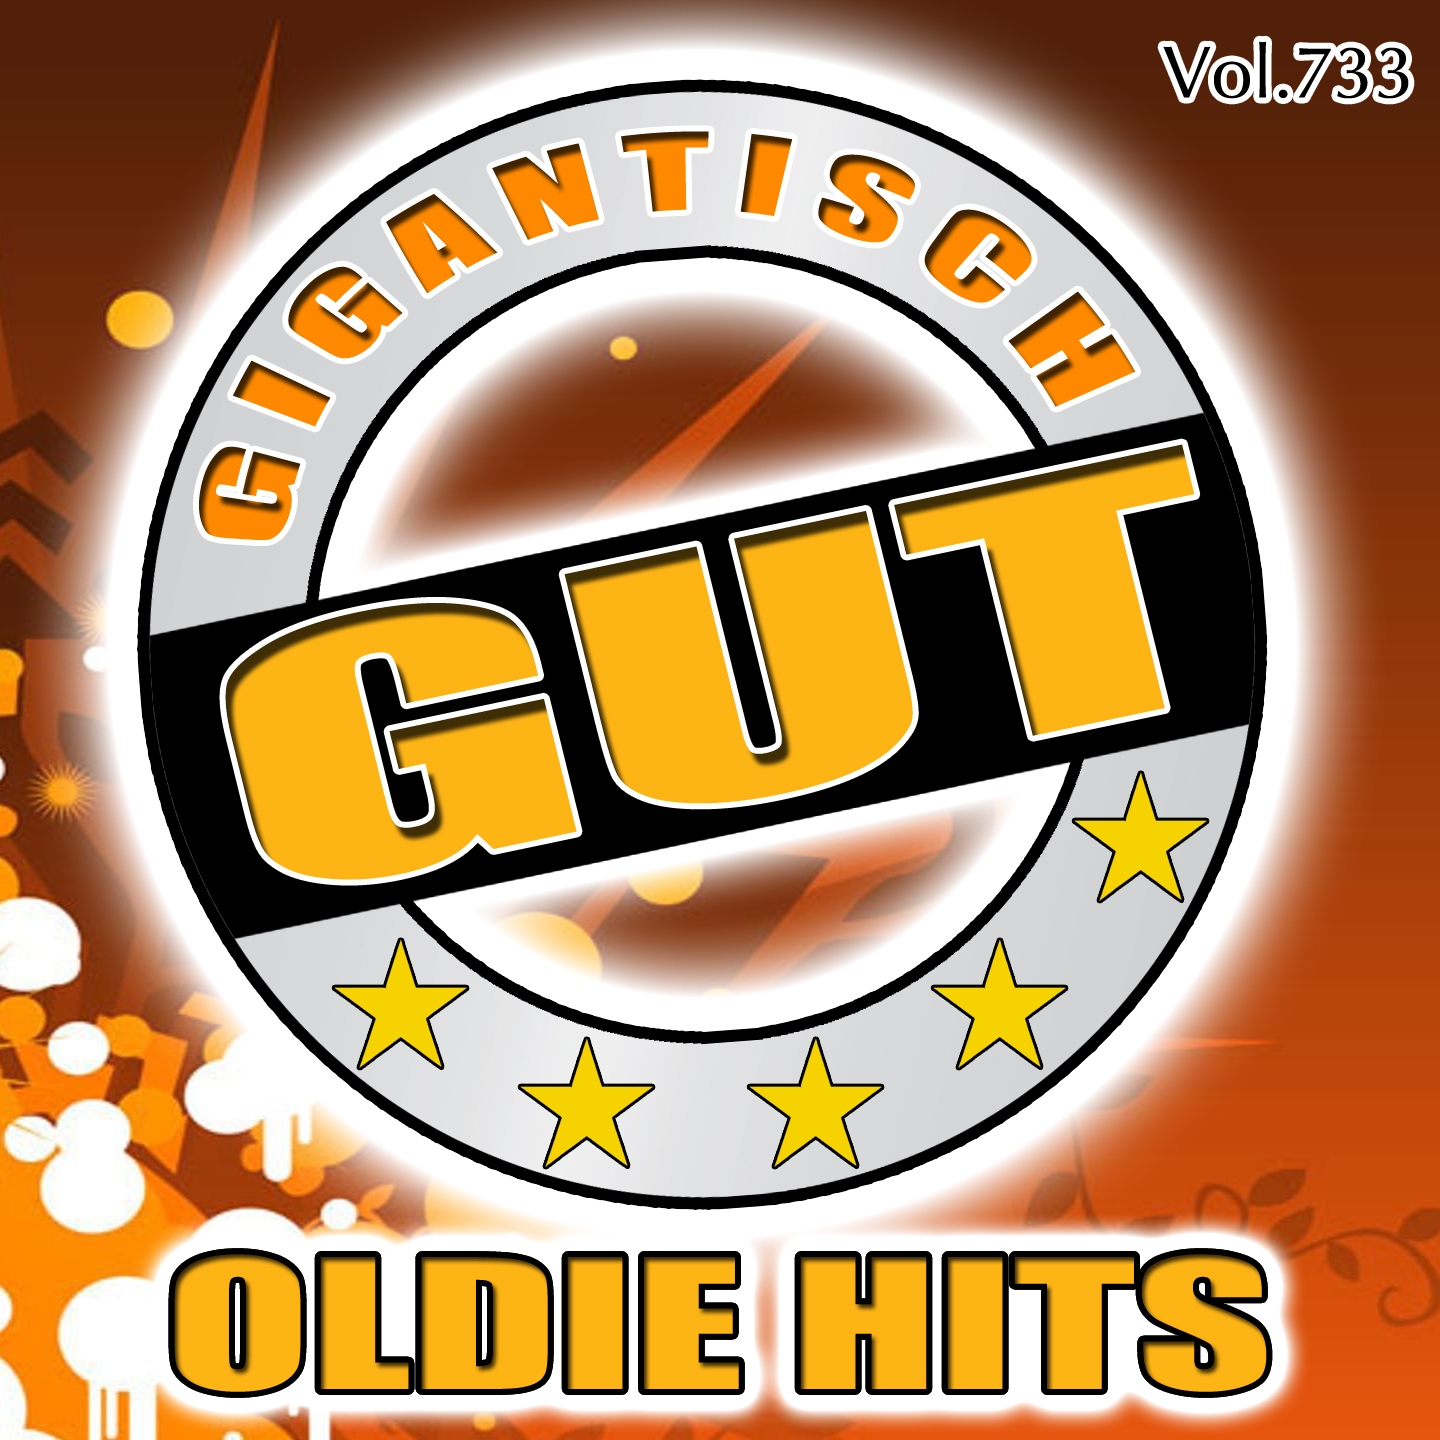 Gigantisch Gut: Oldie Hits, Vol. 733